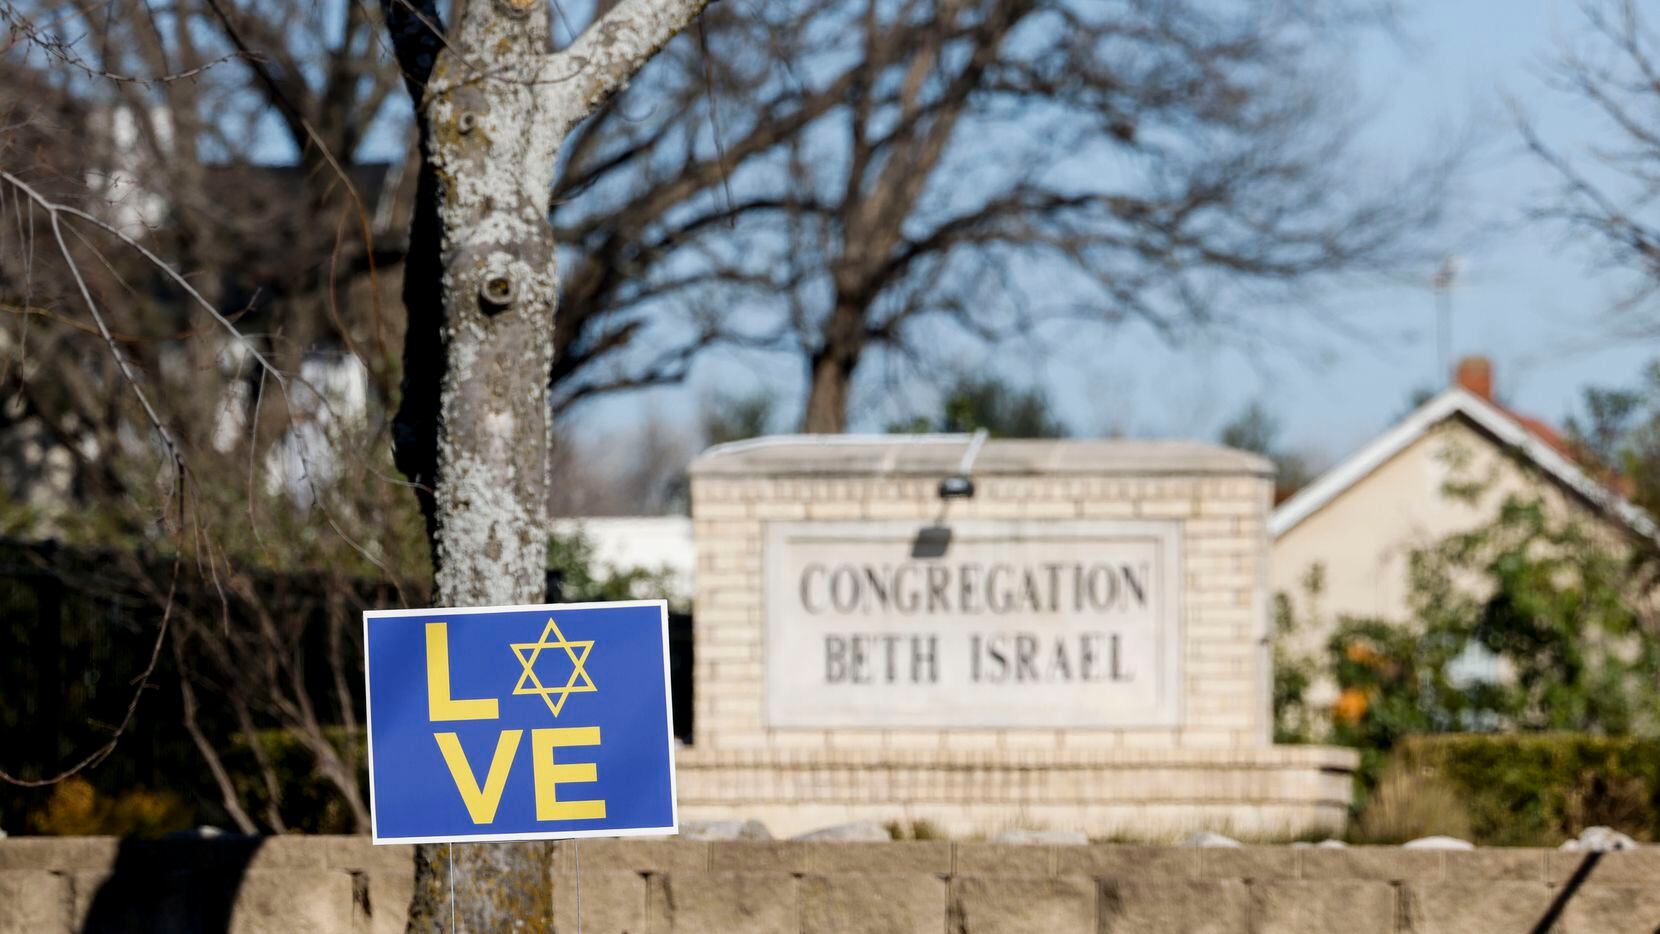 Una pancarta fue colocada el domingo afuera de la sinagoga Congregation Beth Israel, en la...